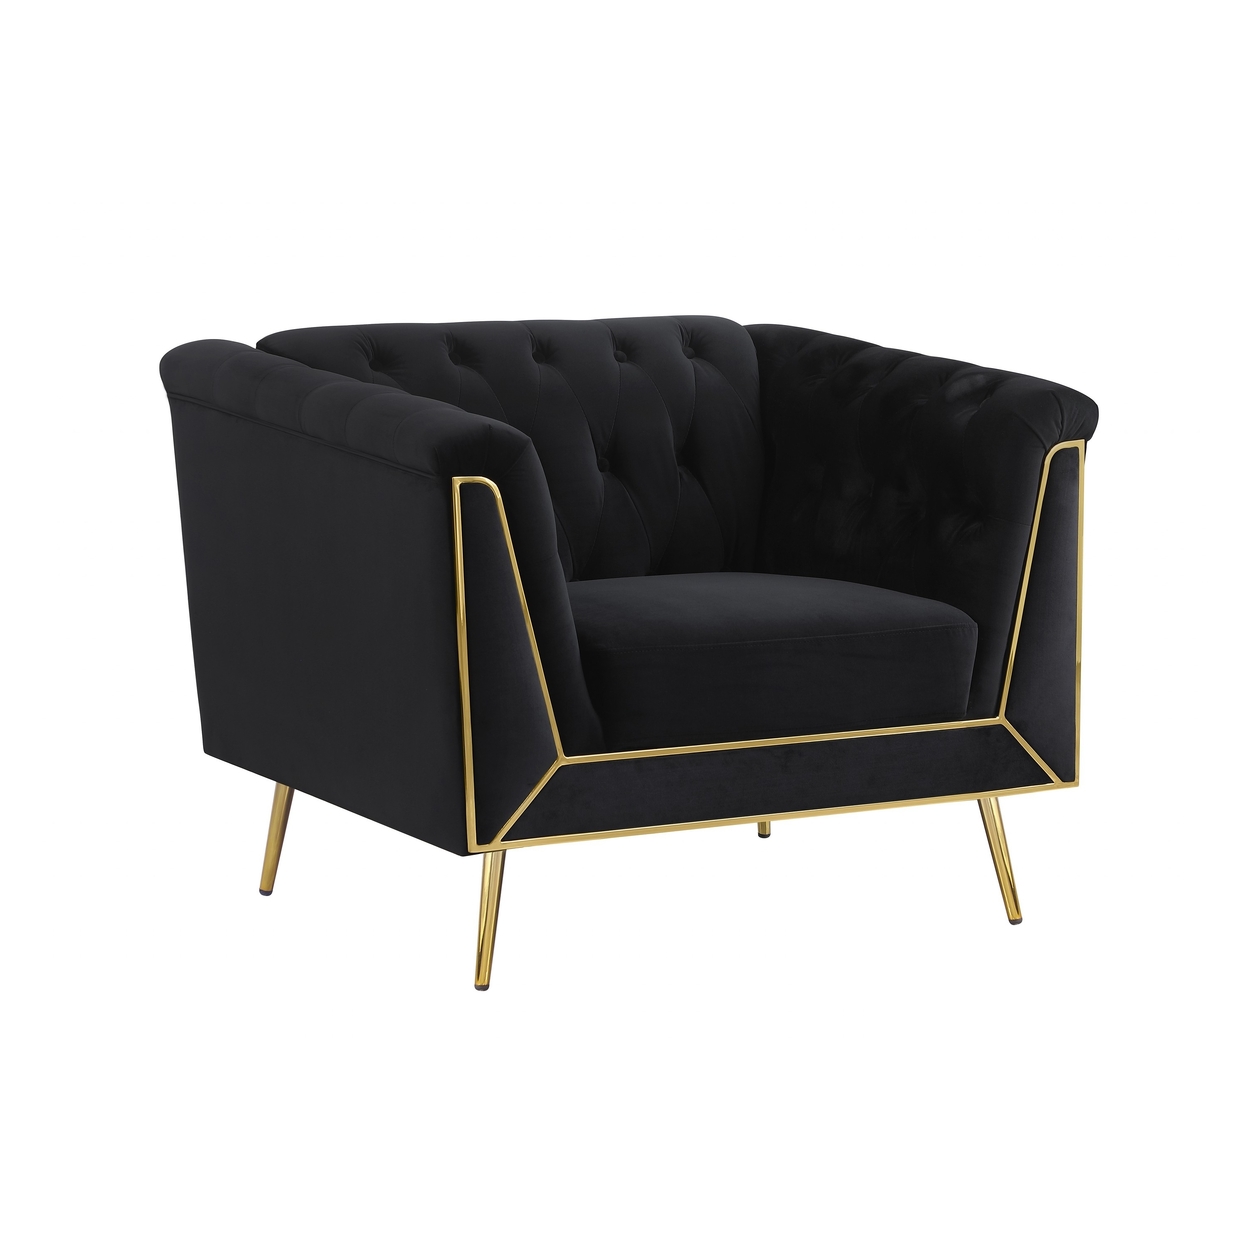 Ato 40 Inch Chesterfield Chair, Gold Trim, Tufted Black Velvet Upholstery- Saltoro Sherpi